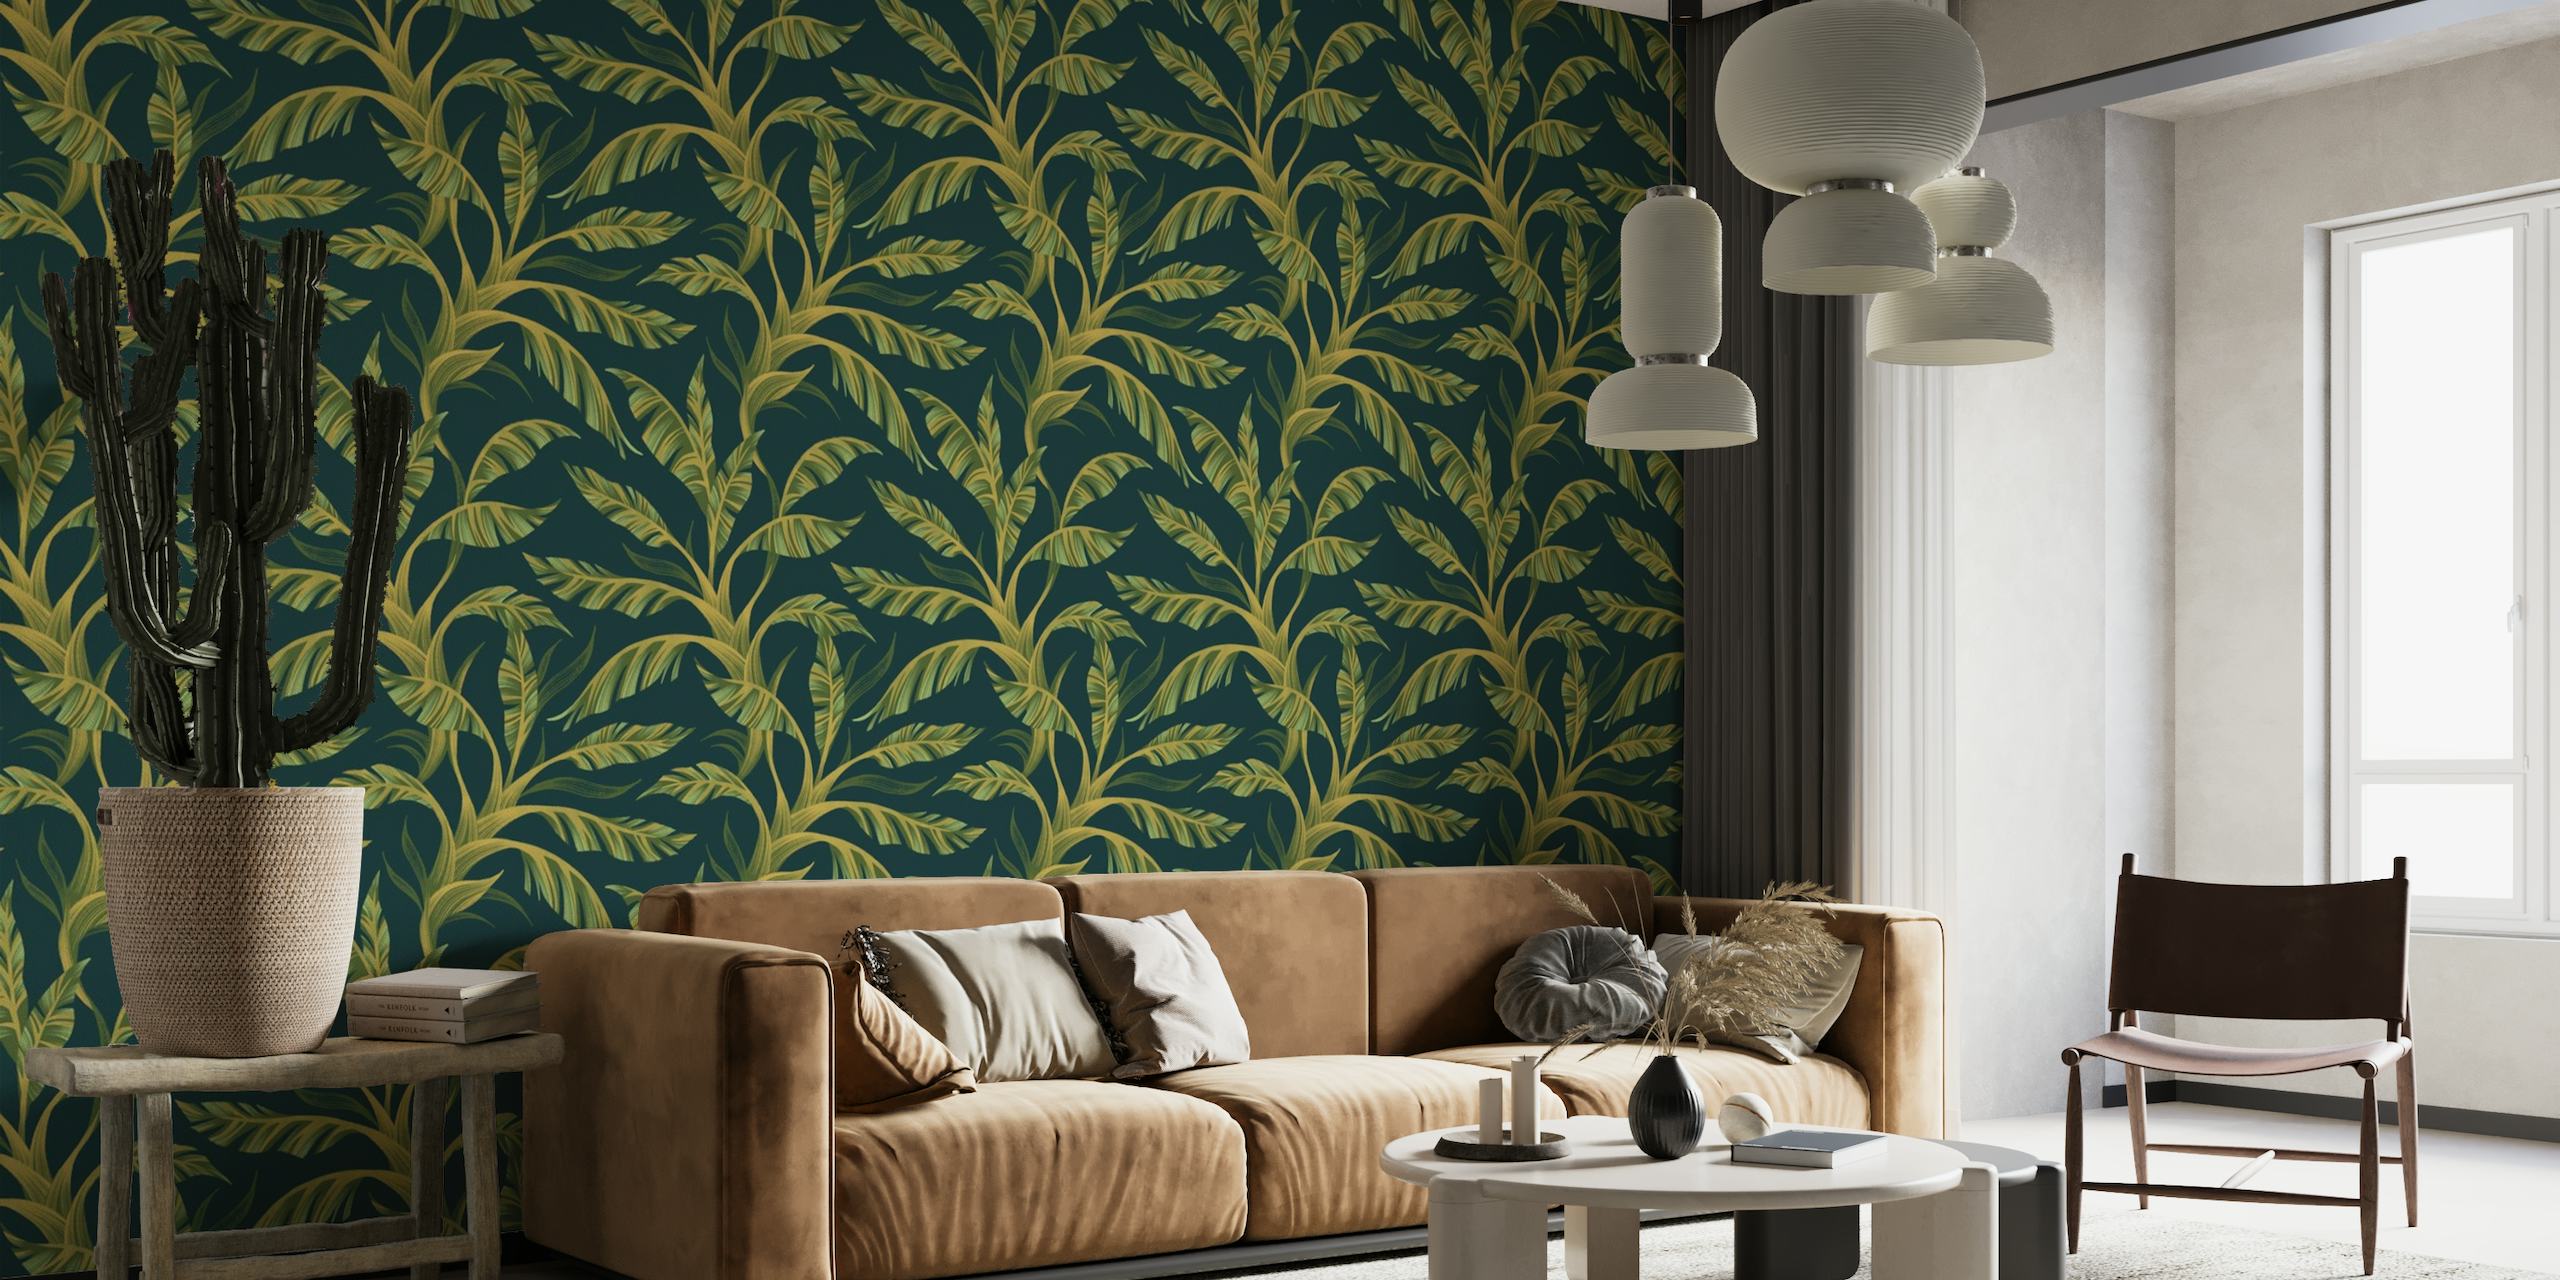 Tamnozeleno tropsko lišće zidna slika za uređenje doma.